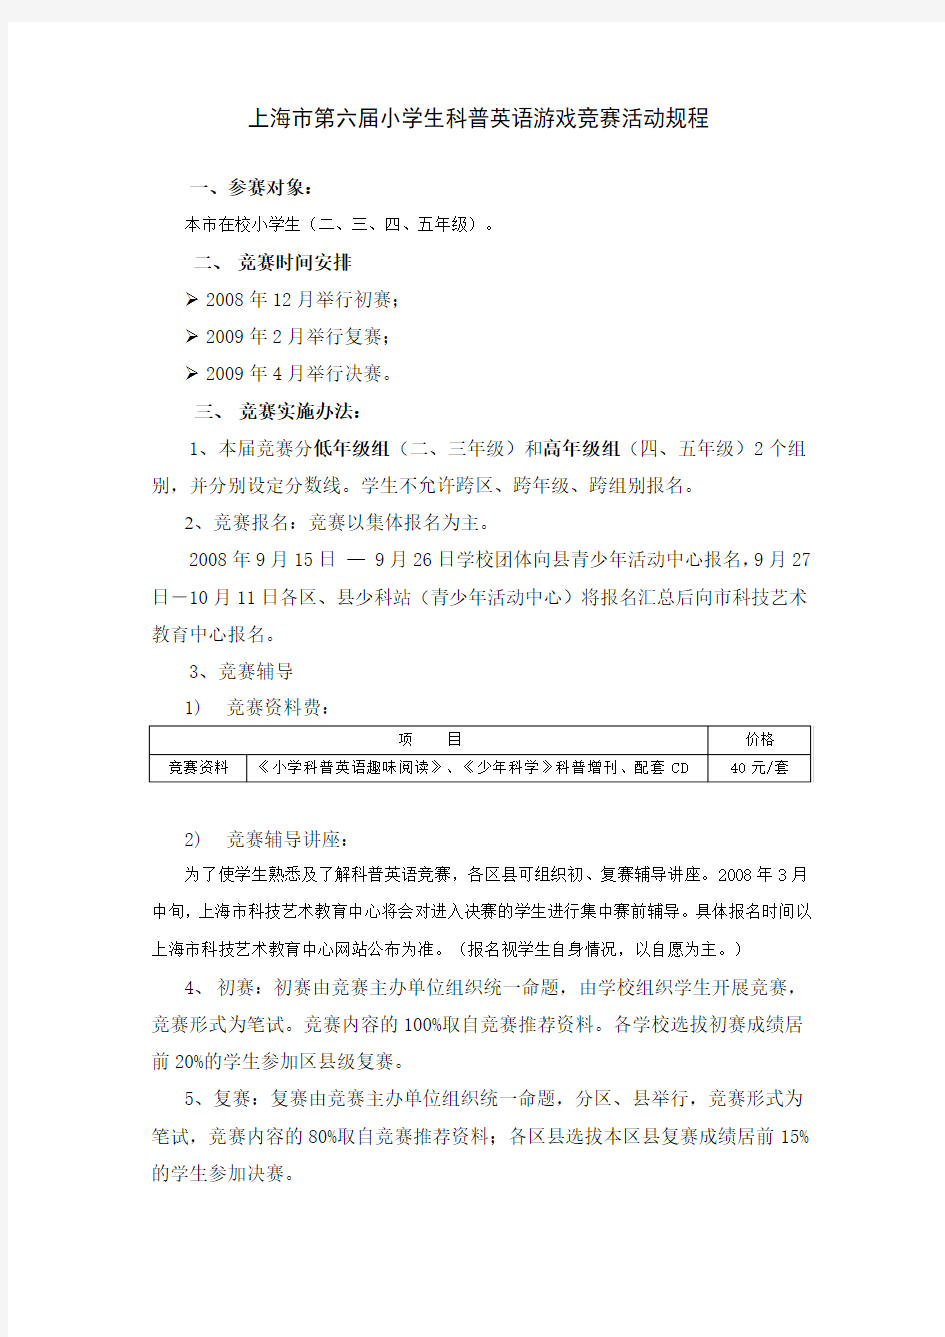 上海市第六届小学生科普英语游戏竞赛活动规程